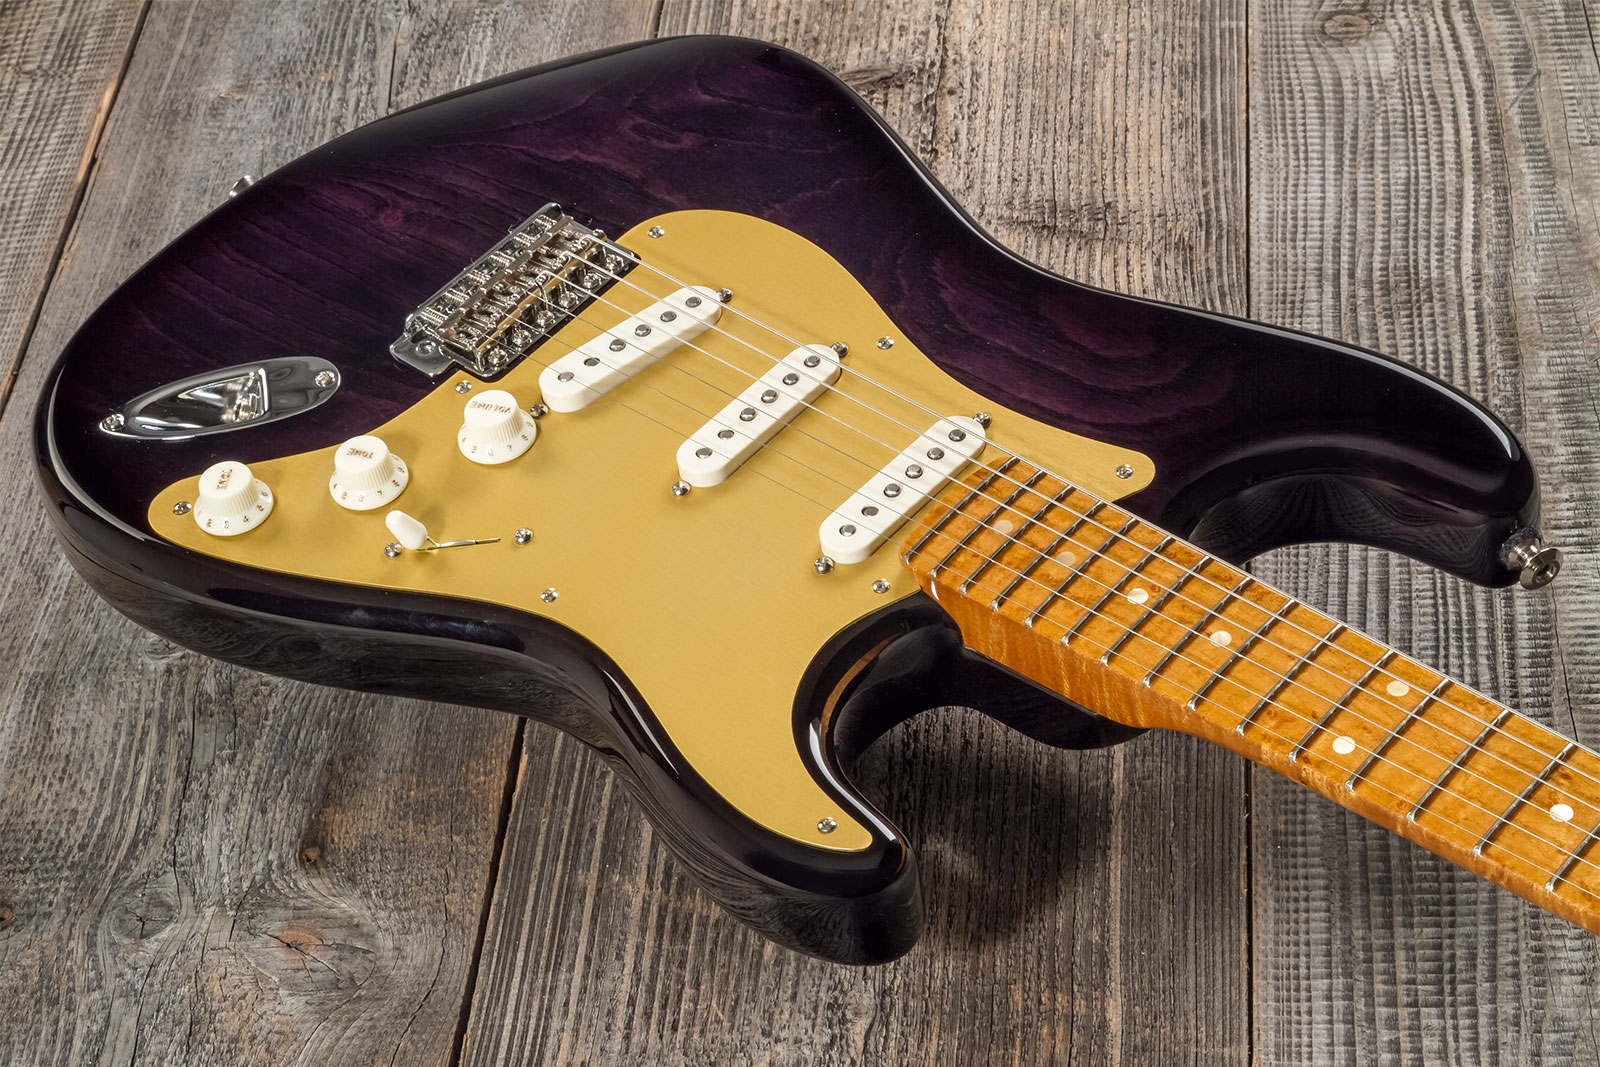 Fender Custom Shop Strat American Custom 3s Trem Mn #xn15899 - Nos Ebony Transparent - Elektrische gitaar in Str-vorm - Variation 2